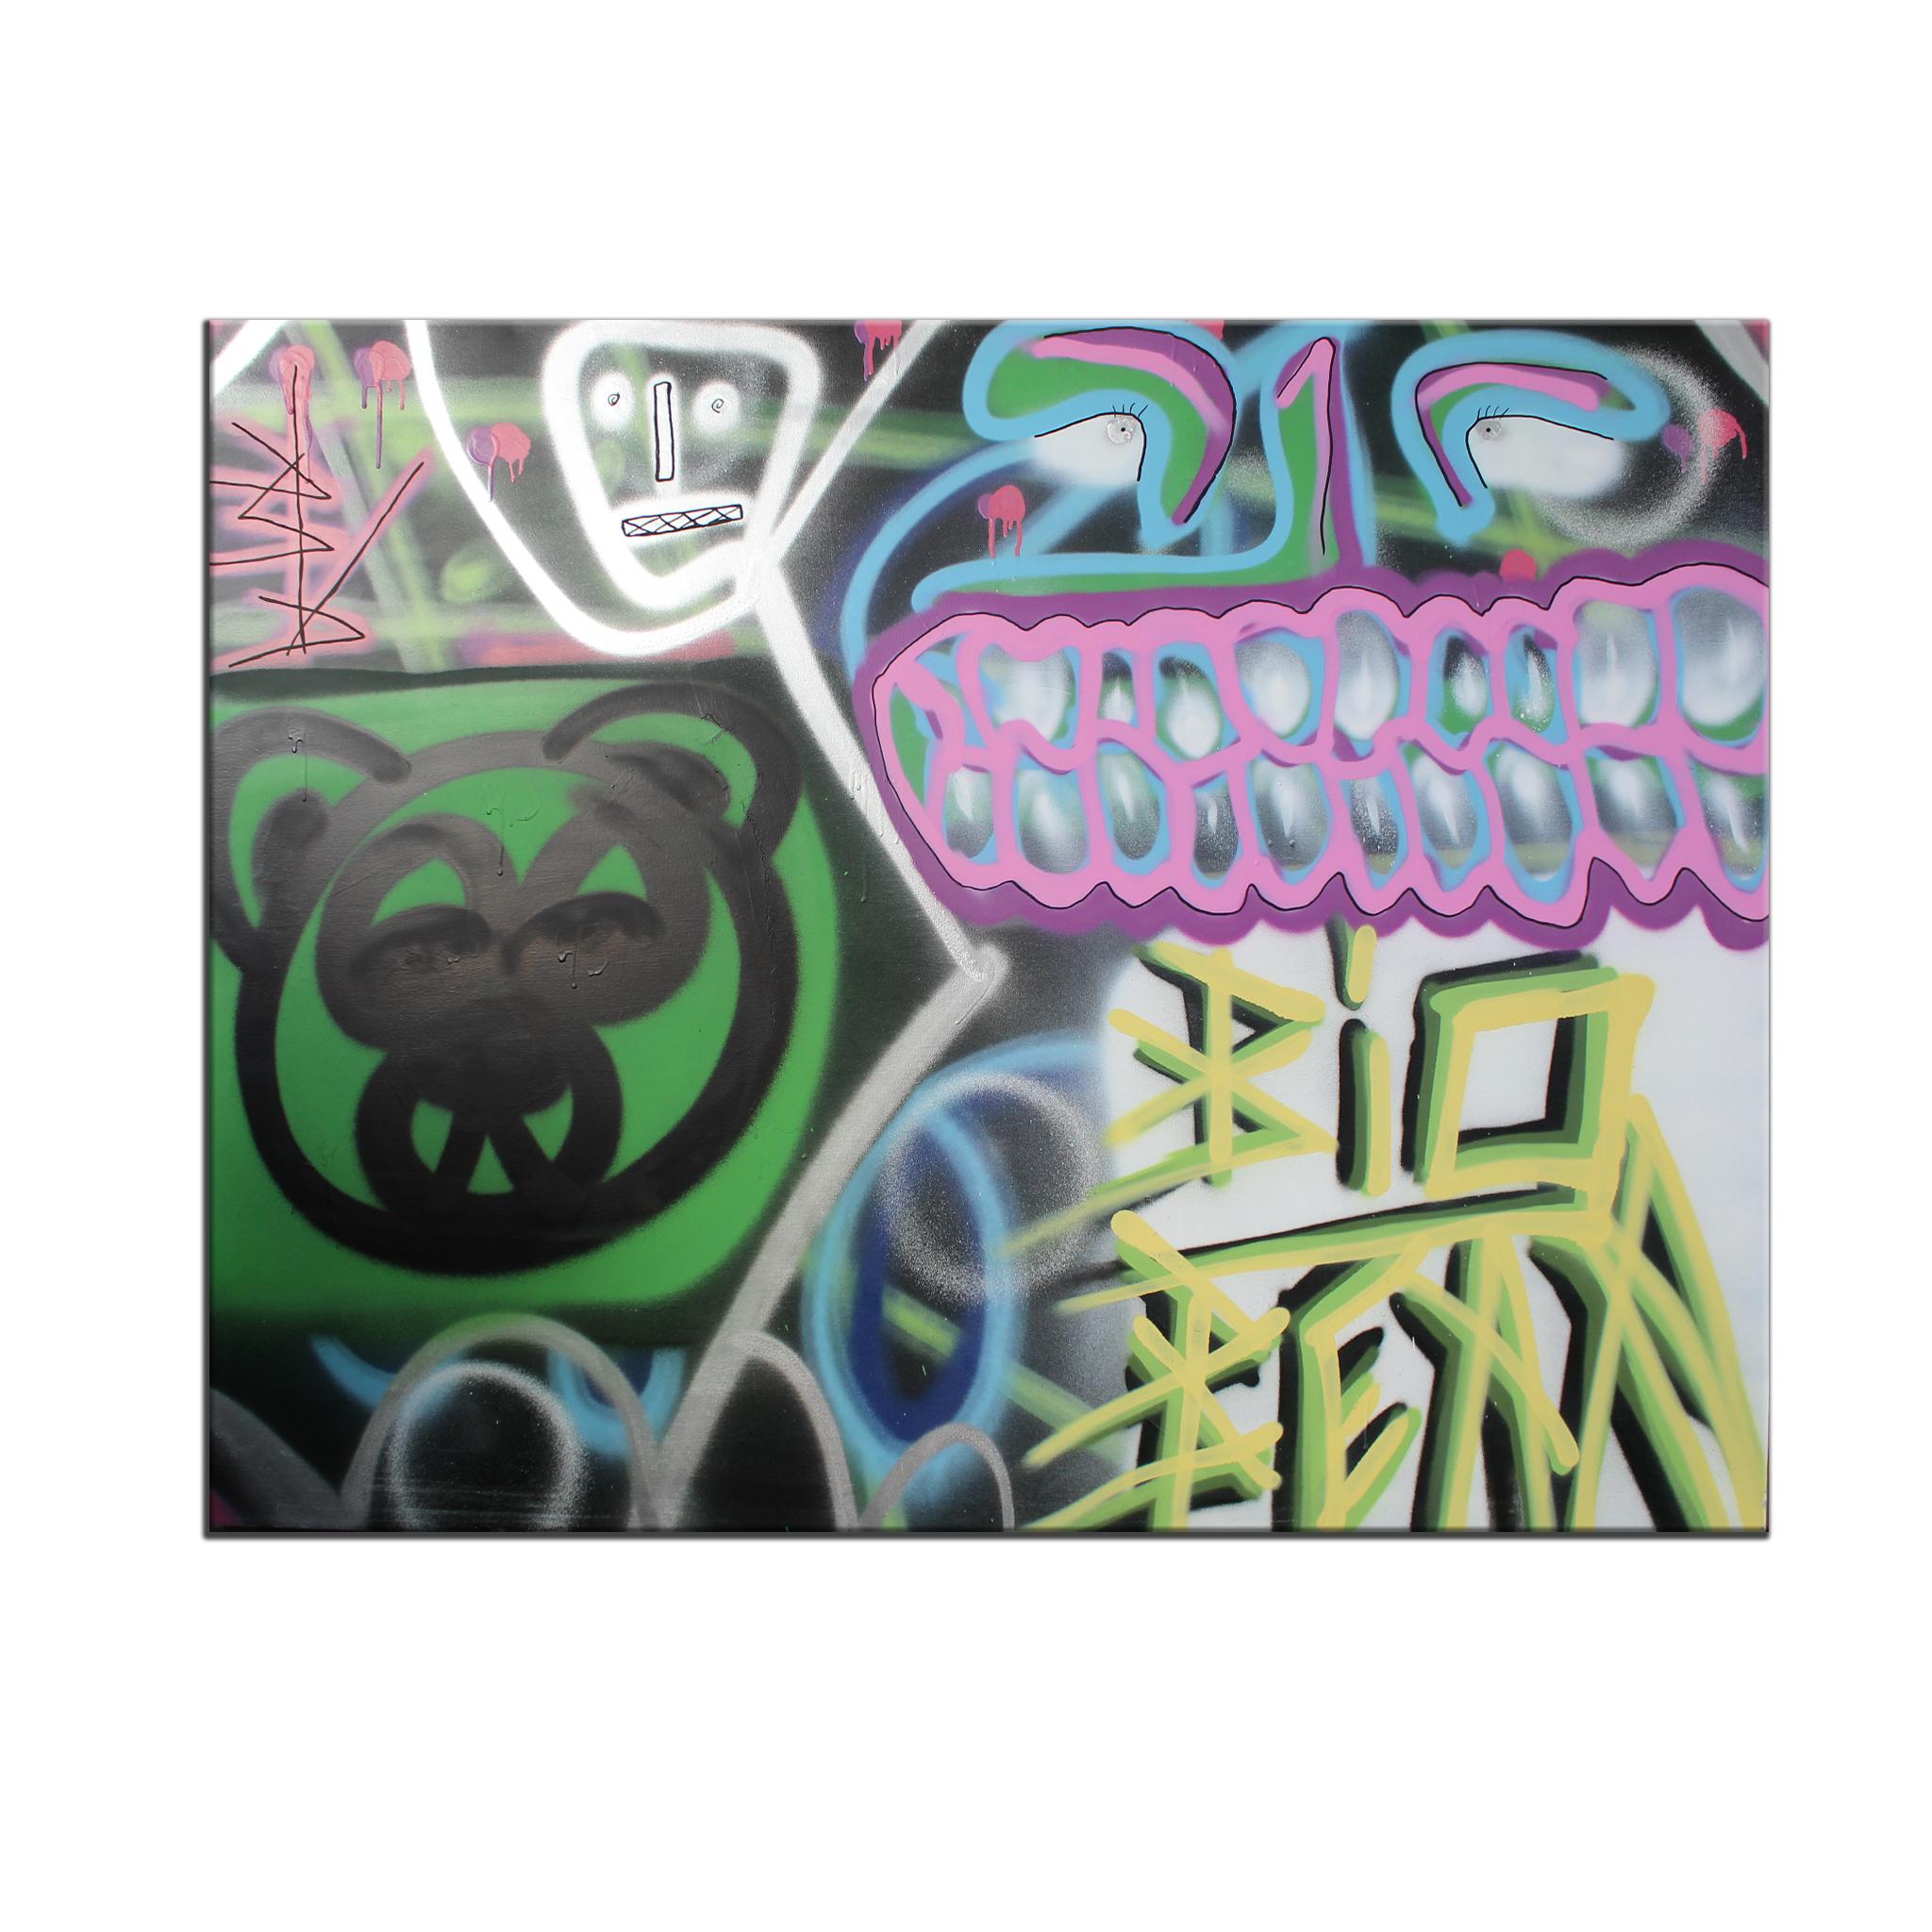 das Originalgemälde "Untitled XIII" auf Leinwand zeigt eine kühne, exzentrische Street-Art-Ästhetik in leuchtenden Grün-, Gelb-, Pink-, Lila-, Blau-, Silber-, Weiß- und Schwarztönen. Mit der Sprühdose in der Hand entfesselt Big Bear seine urbane